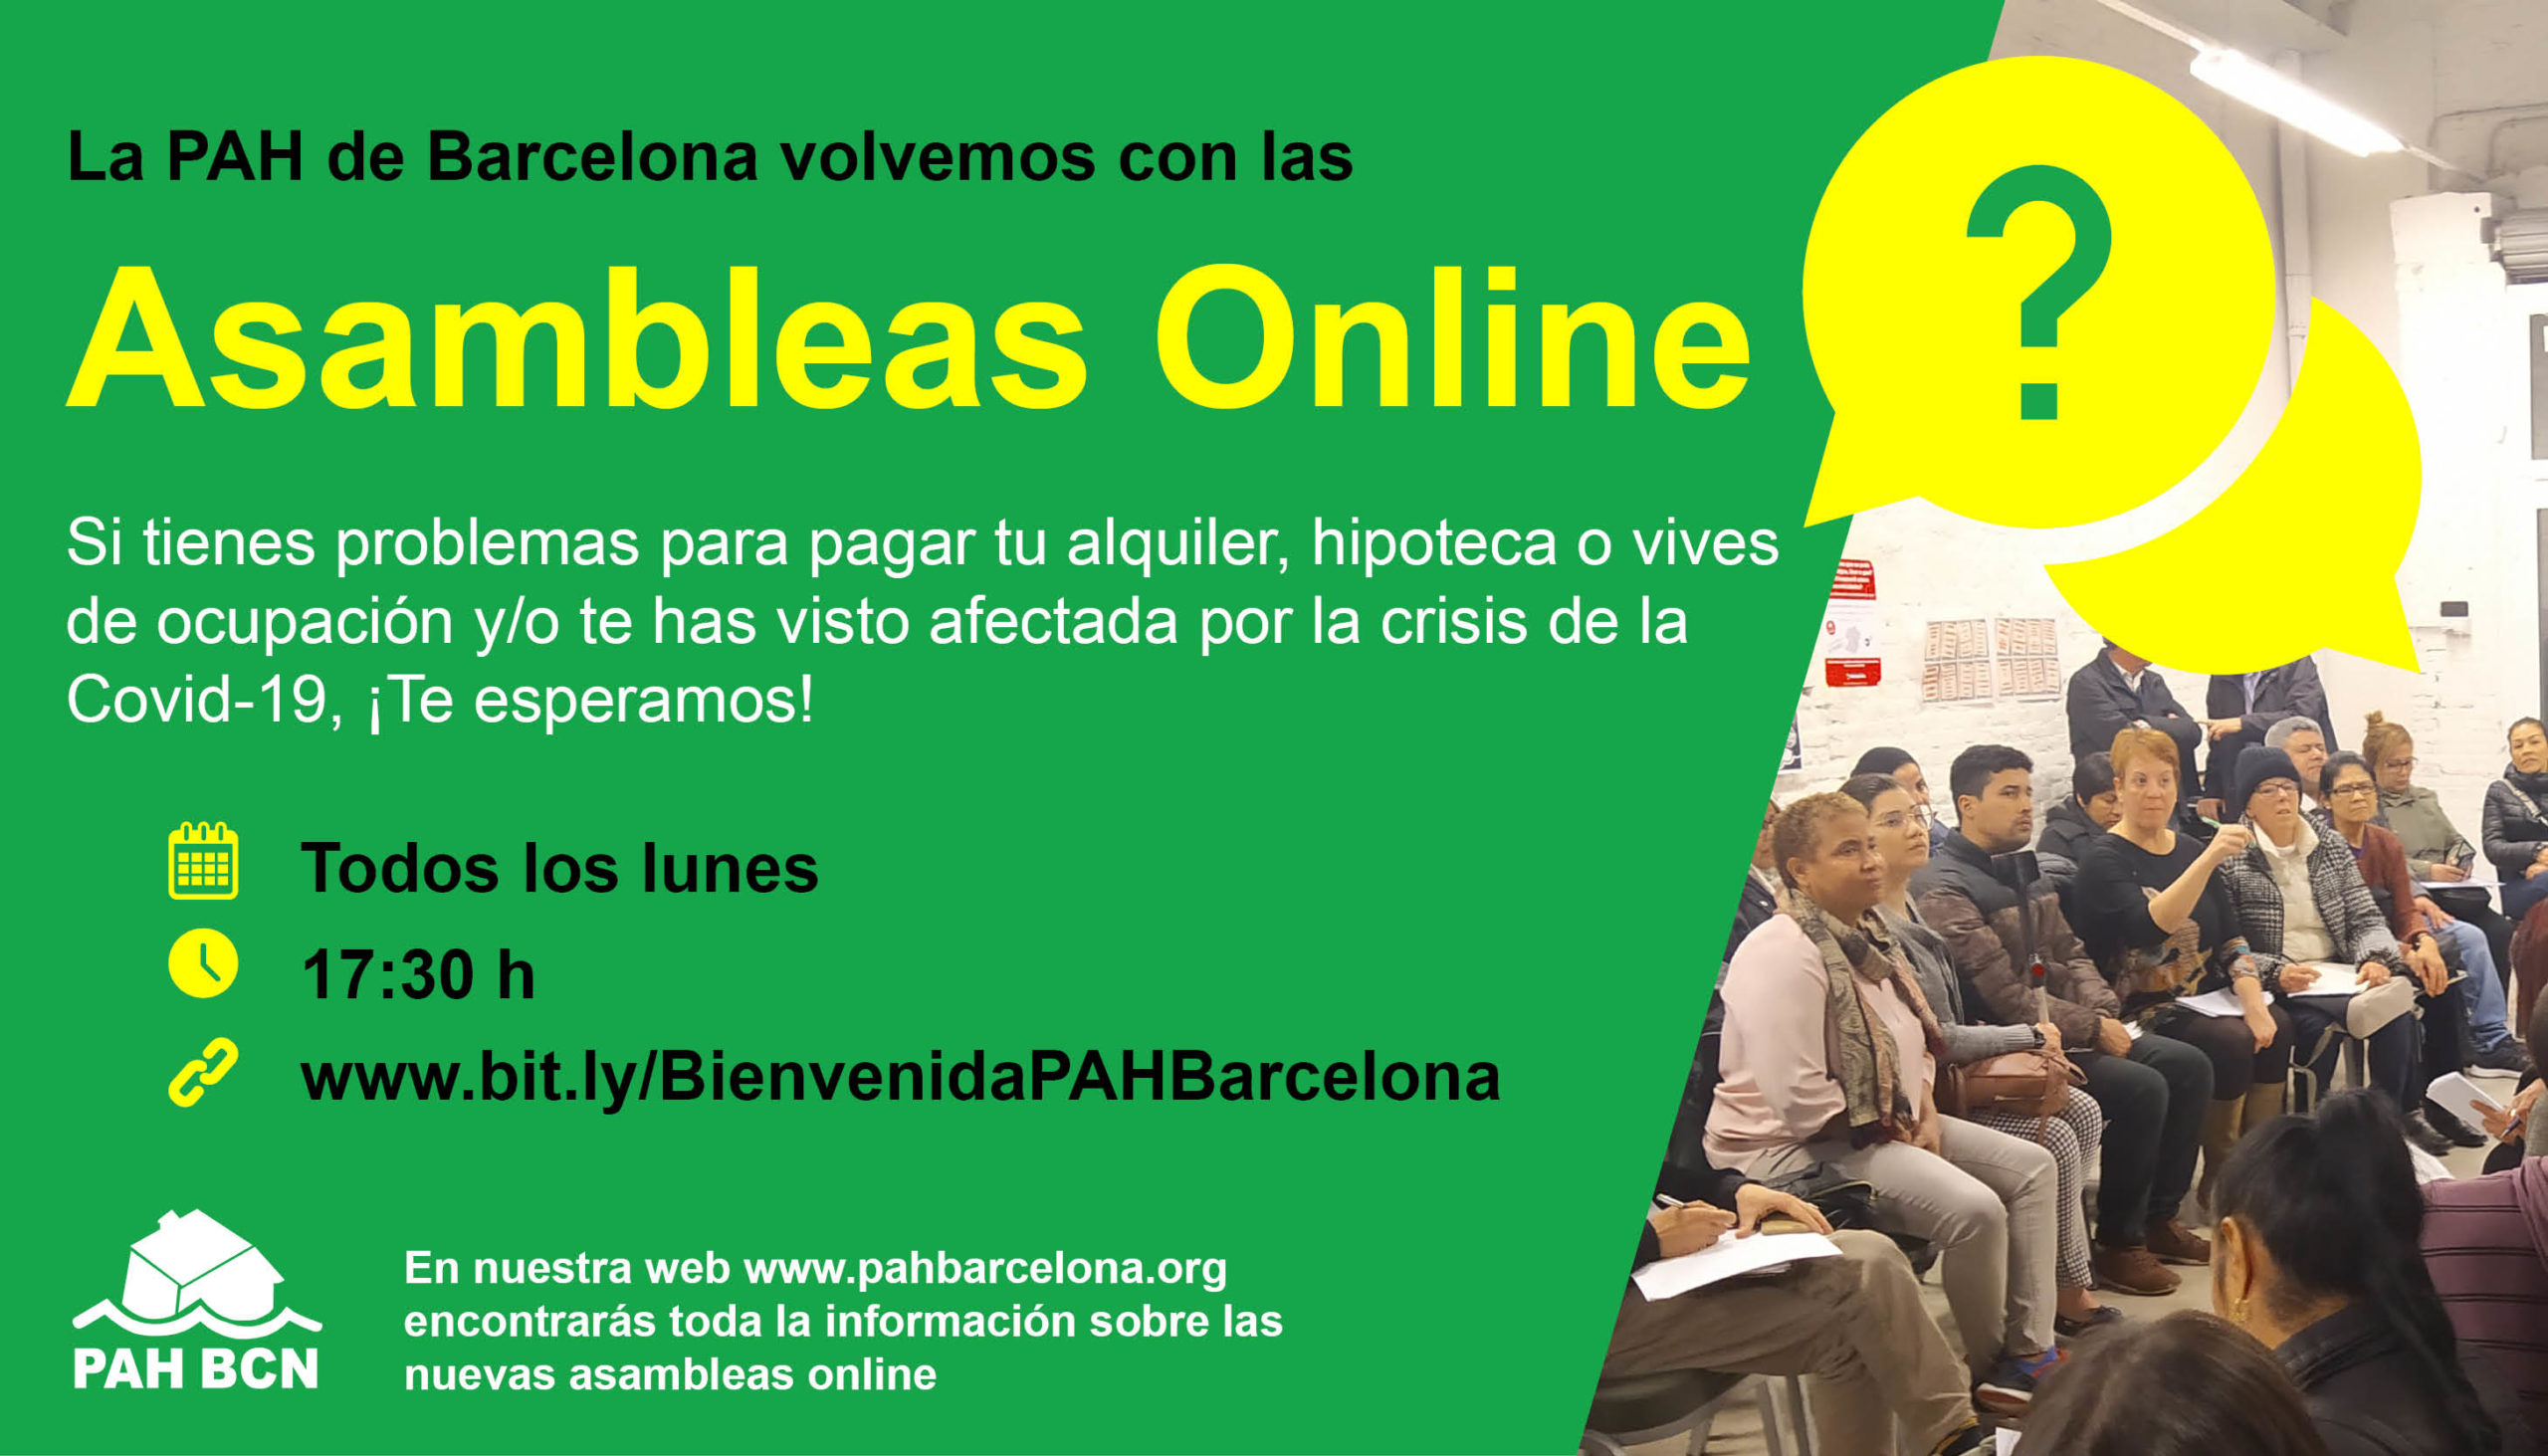 La PAH de Barcelona volvemos con las Asambleas Online PAH Barcelona